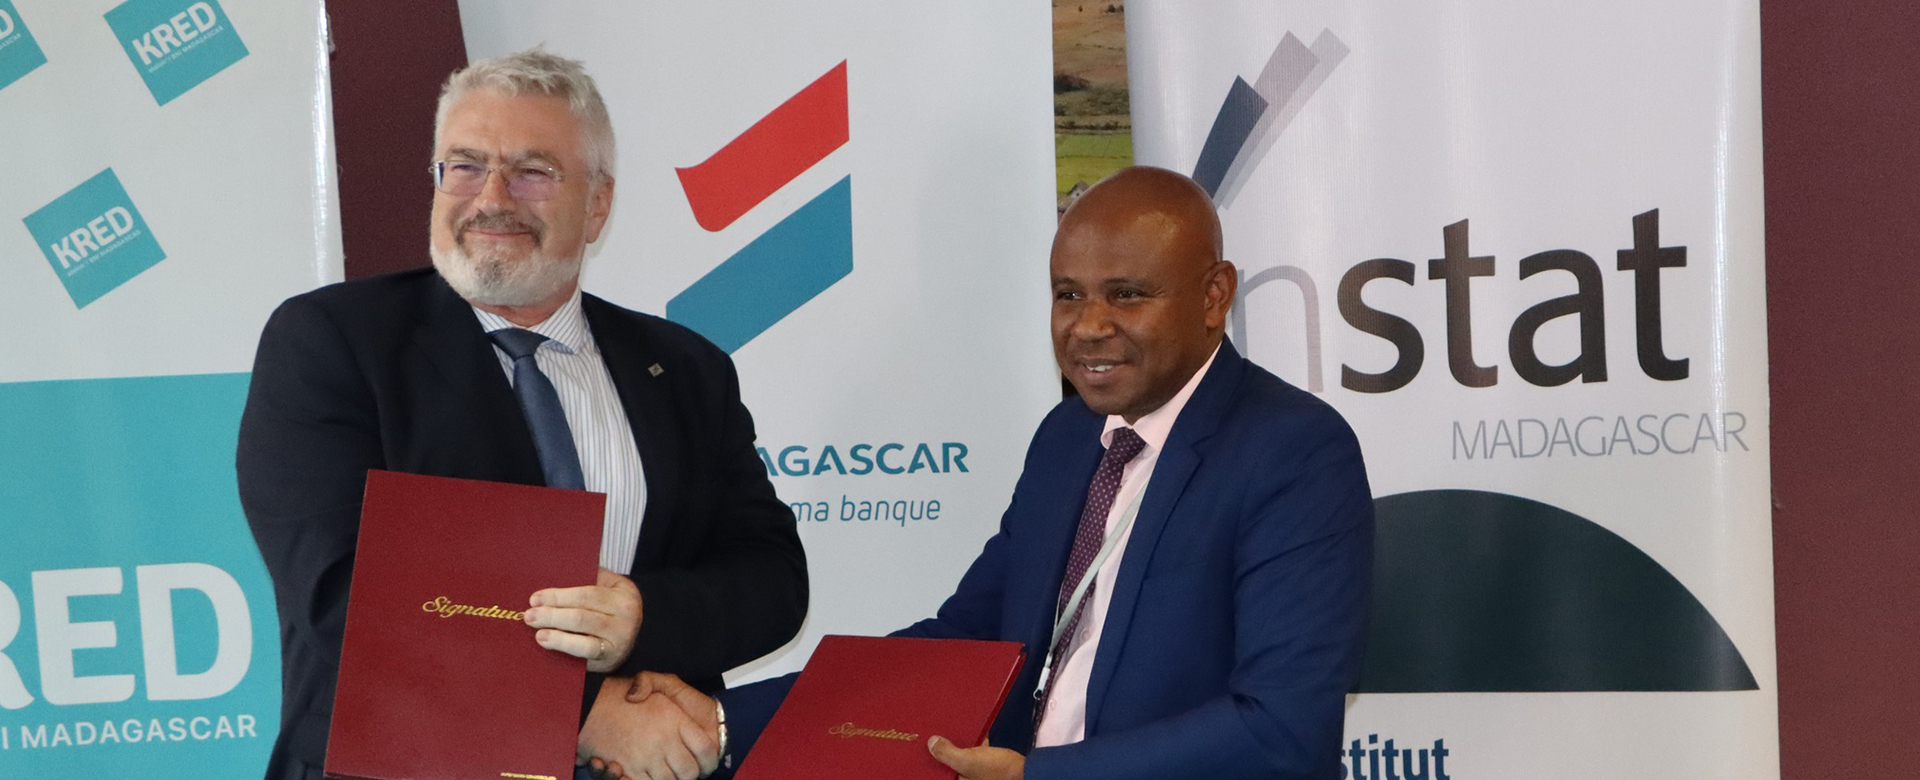 Convention de partenariat entre le MEF-INSTAT et la BNI Madagascar représentée par sa marque KRED